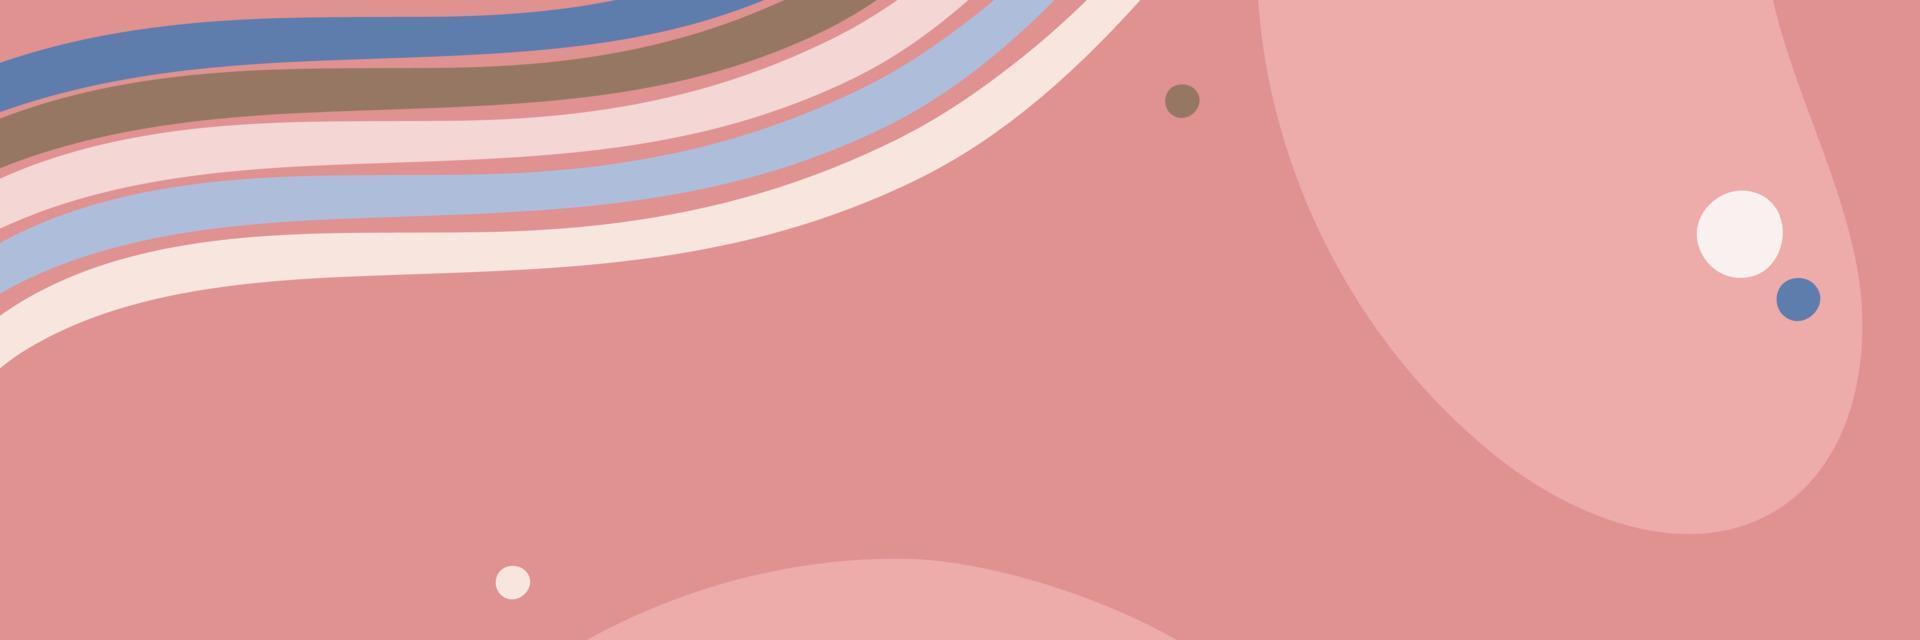 banner vettoriale astratto con forme ovali e linee in colori pastello